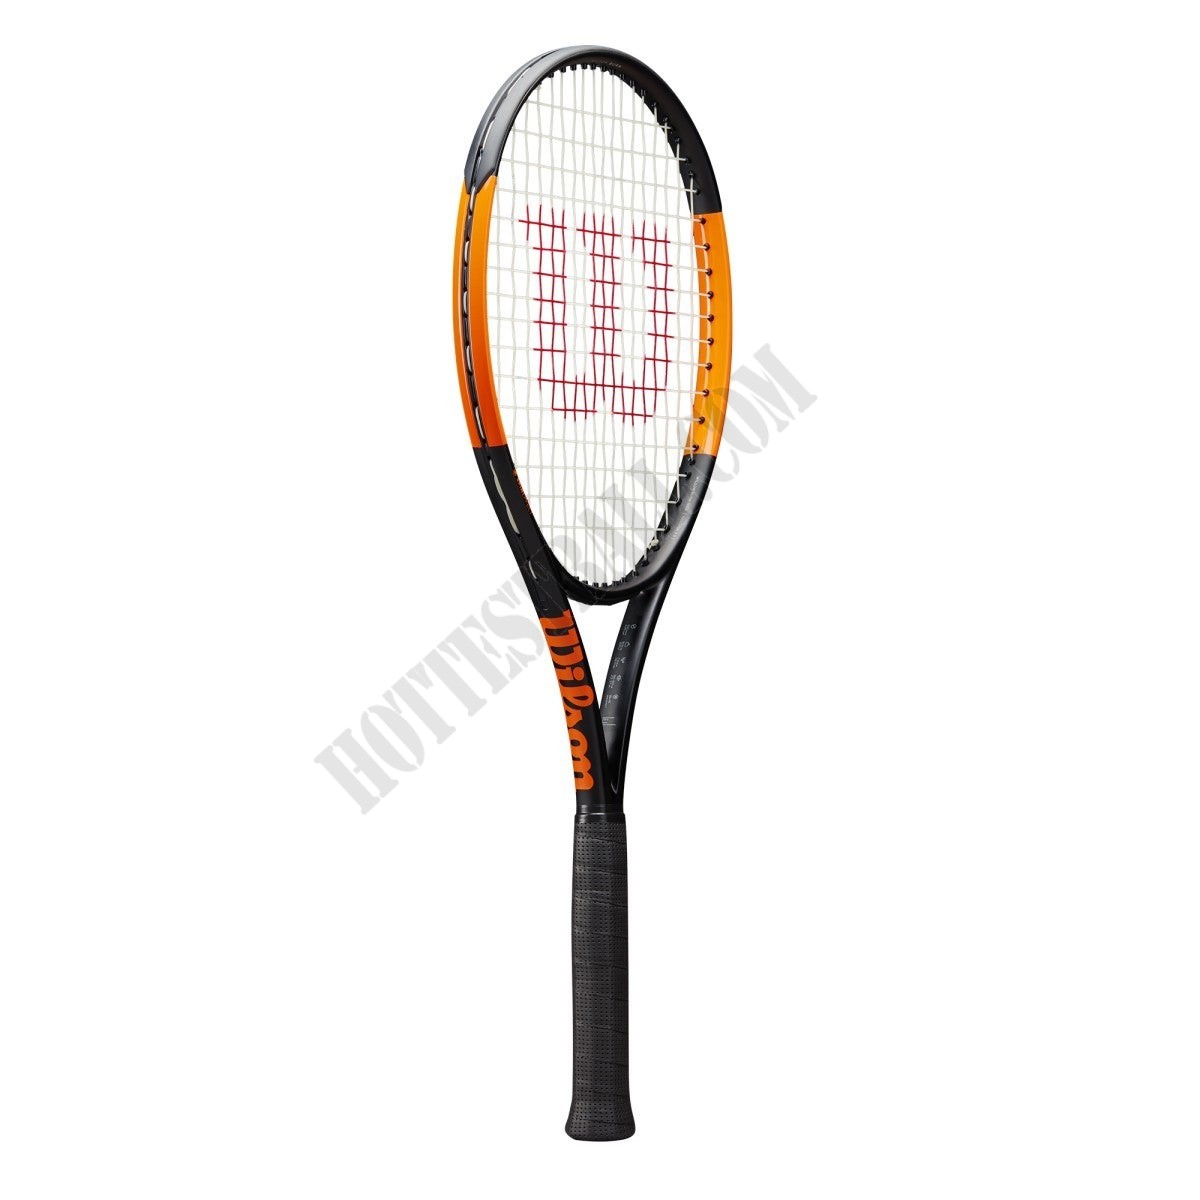 Burn 100ULS Tennis Racket - Wilson Discount Store - -0